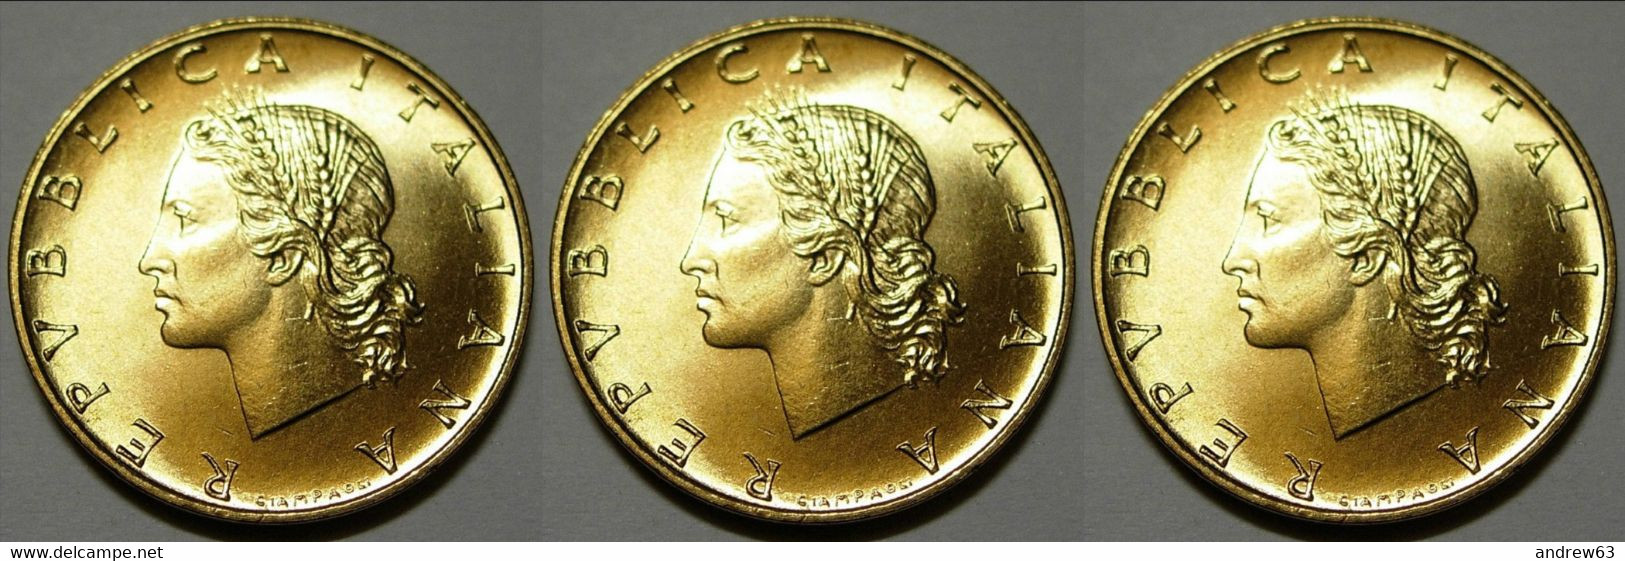 ITALIA - Lire 20 1993 - FDC/Unc Da Rotolino/from Roll 3 Monete/3 Coins - 20 Liras